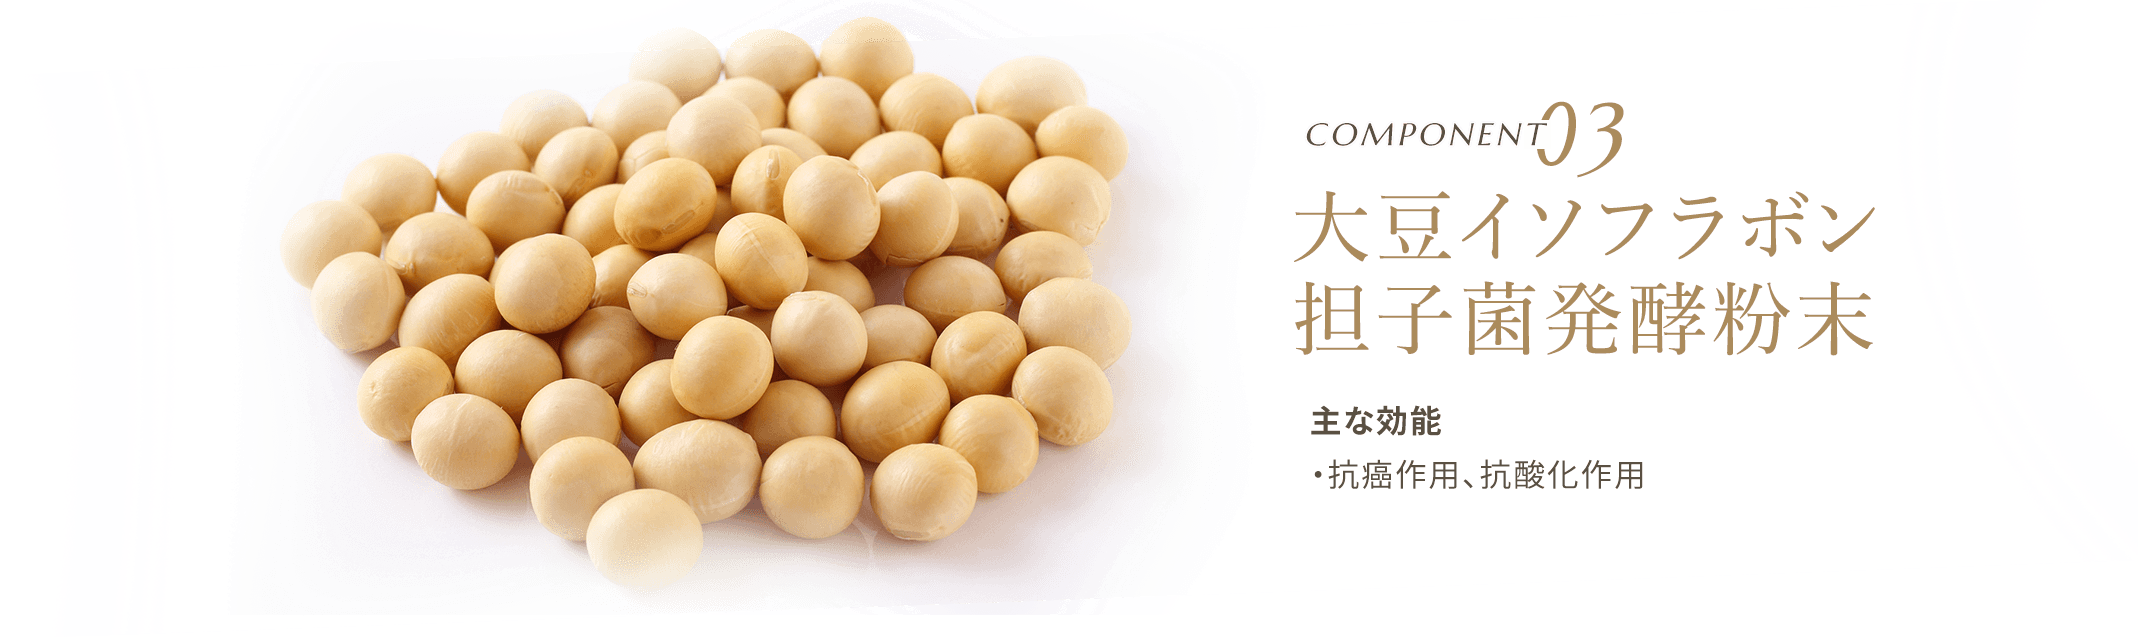 大豆イソフラボン 担子菌発酵粉末 主な効能は・抗癌作用、抗酸化作用